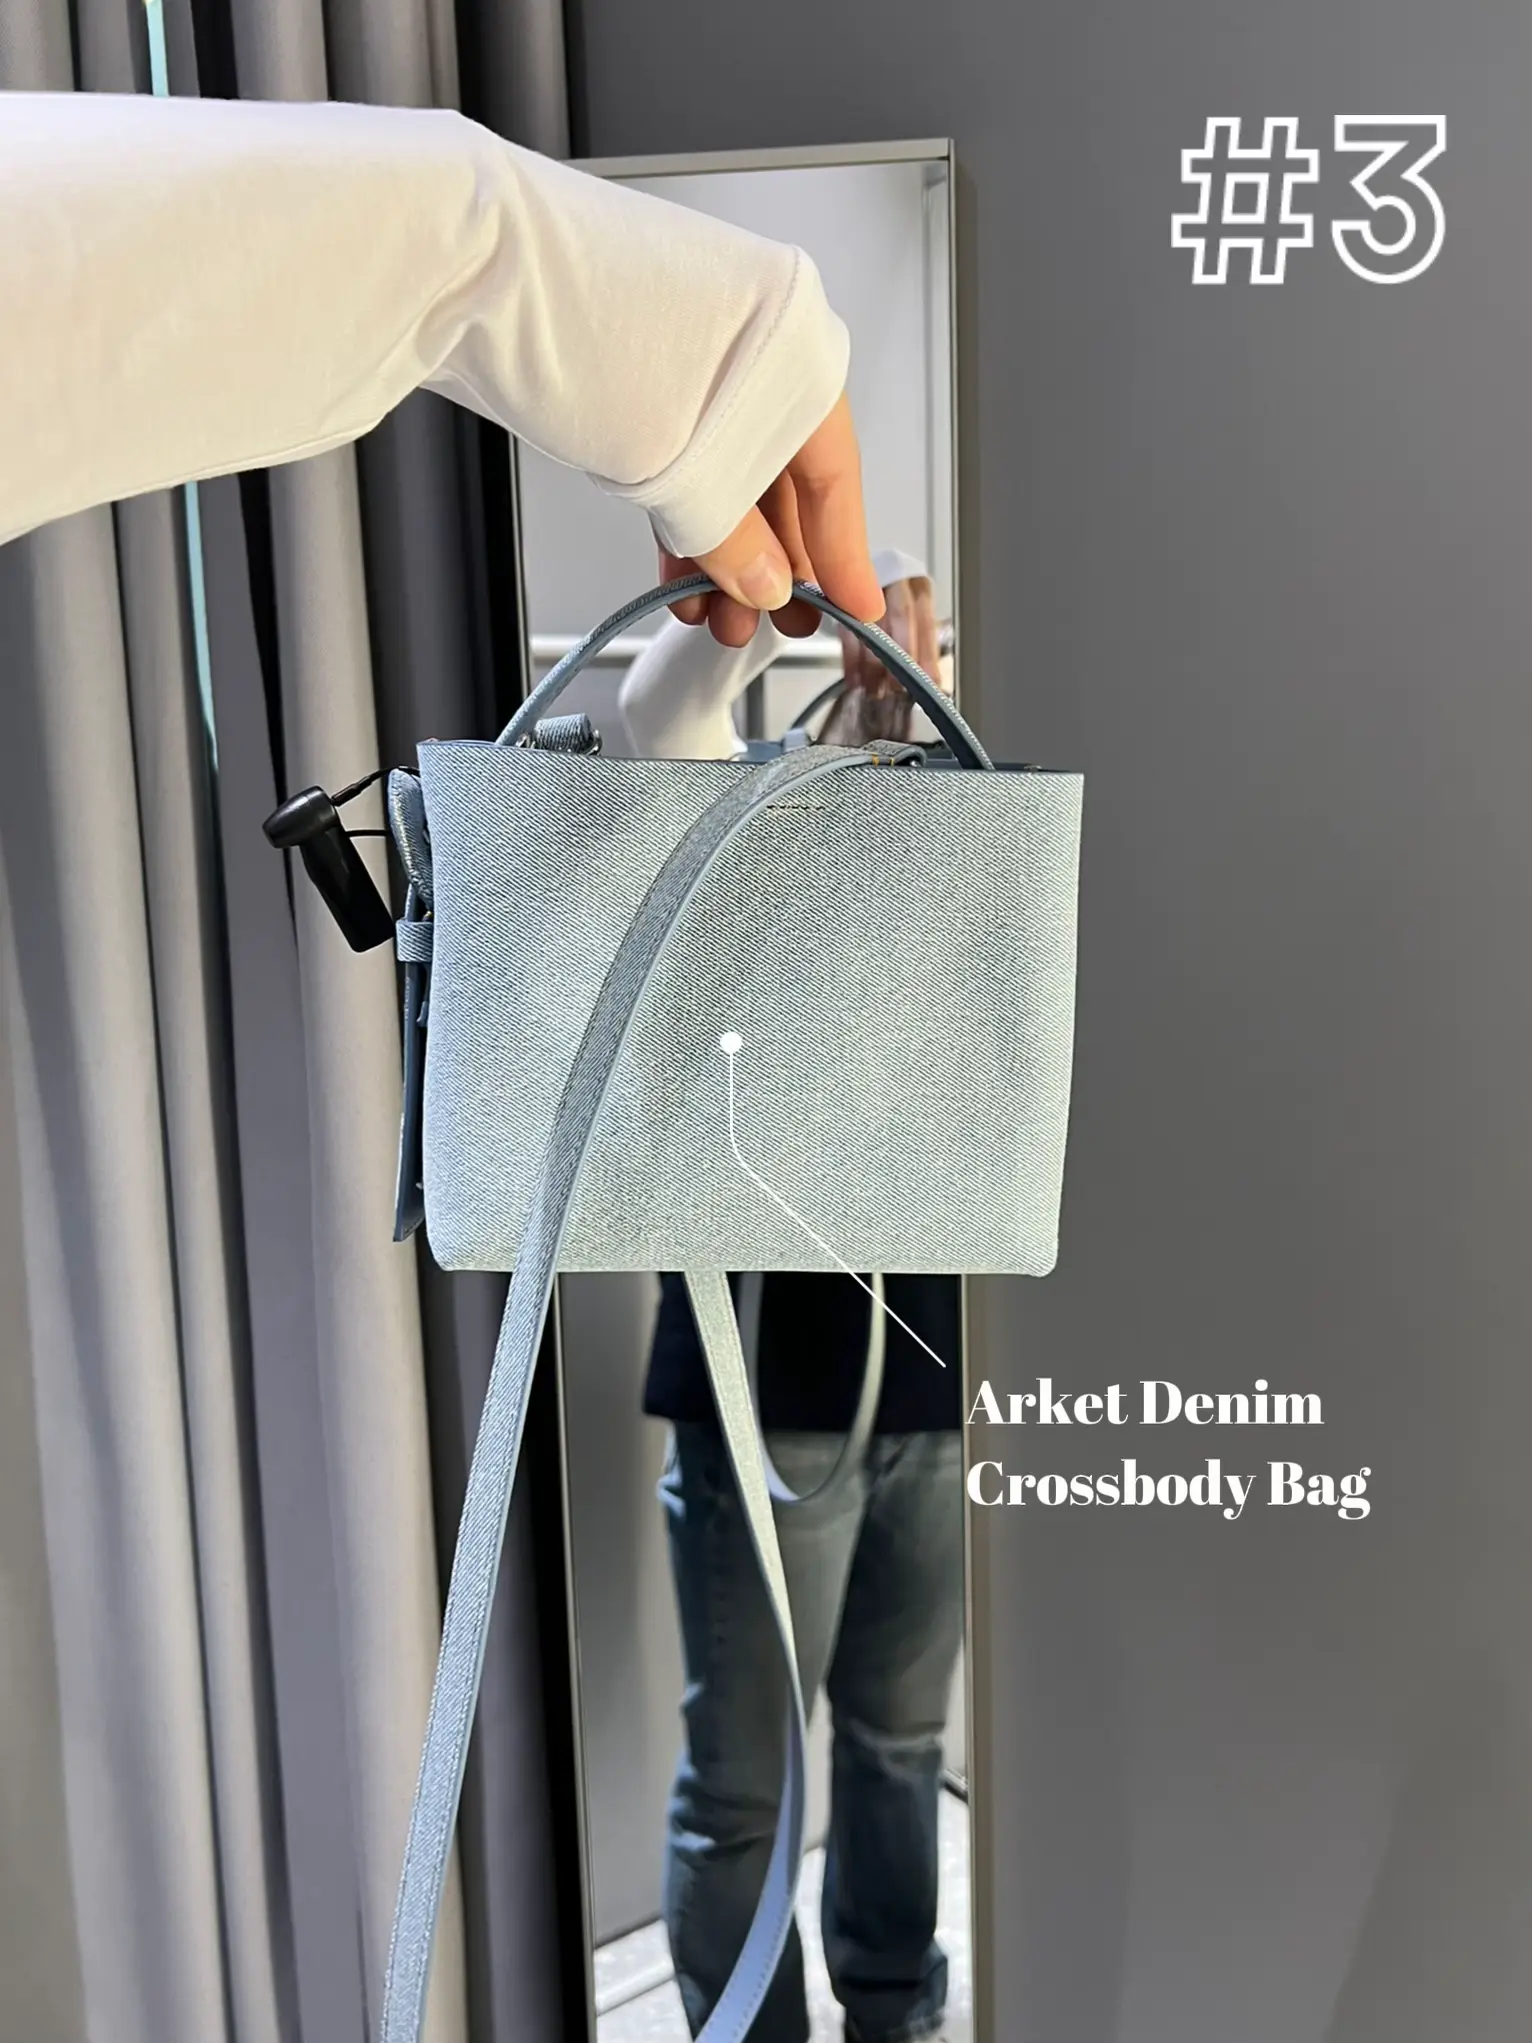 Designer Handbag Dupes! - OLIVIA MAY BELL